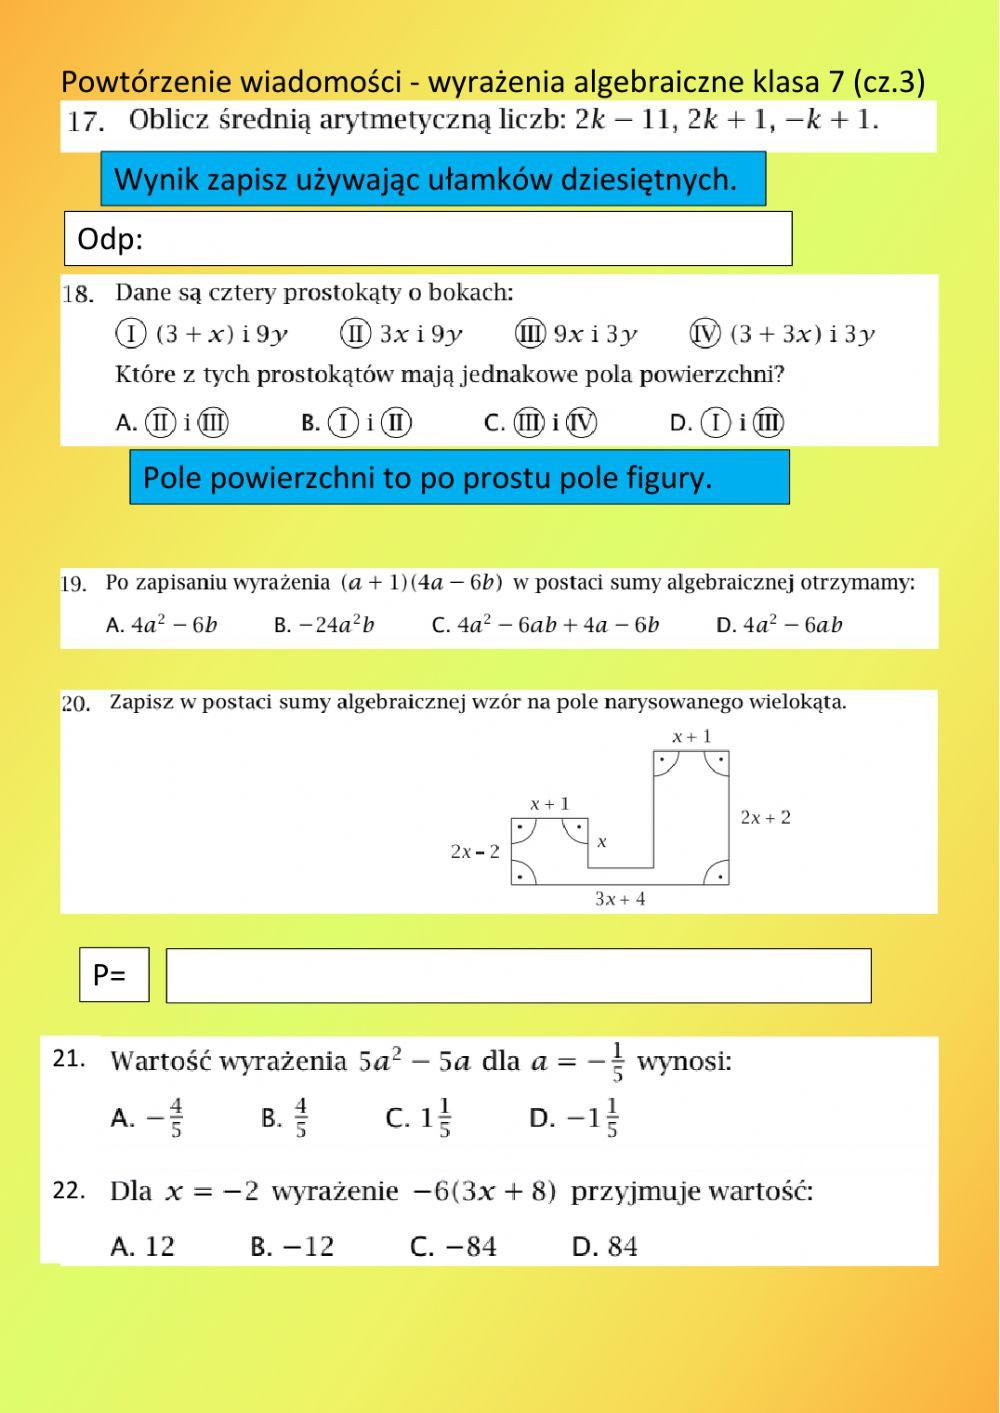 Wyrażenia algebraiczne klasa 7 cz.3